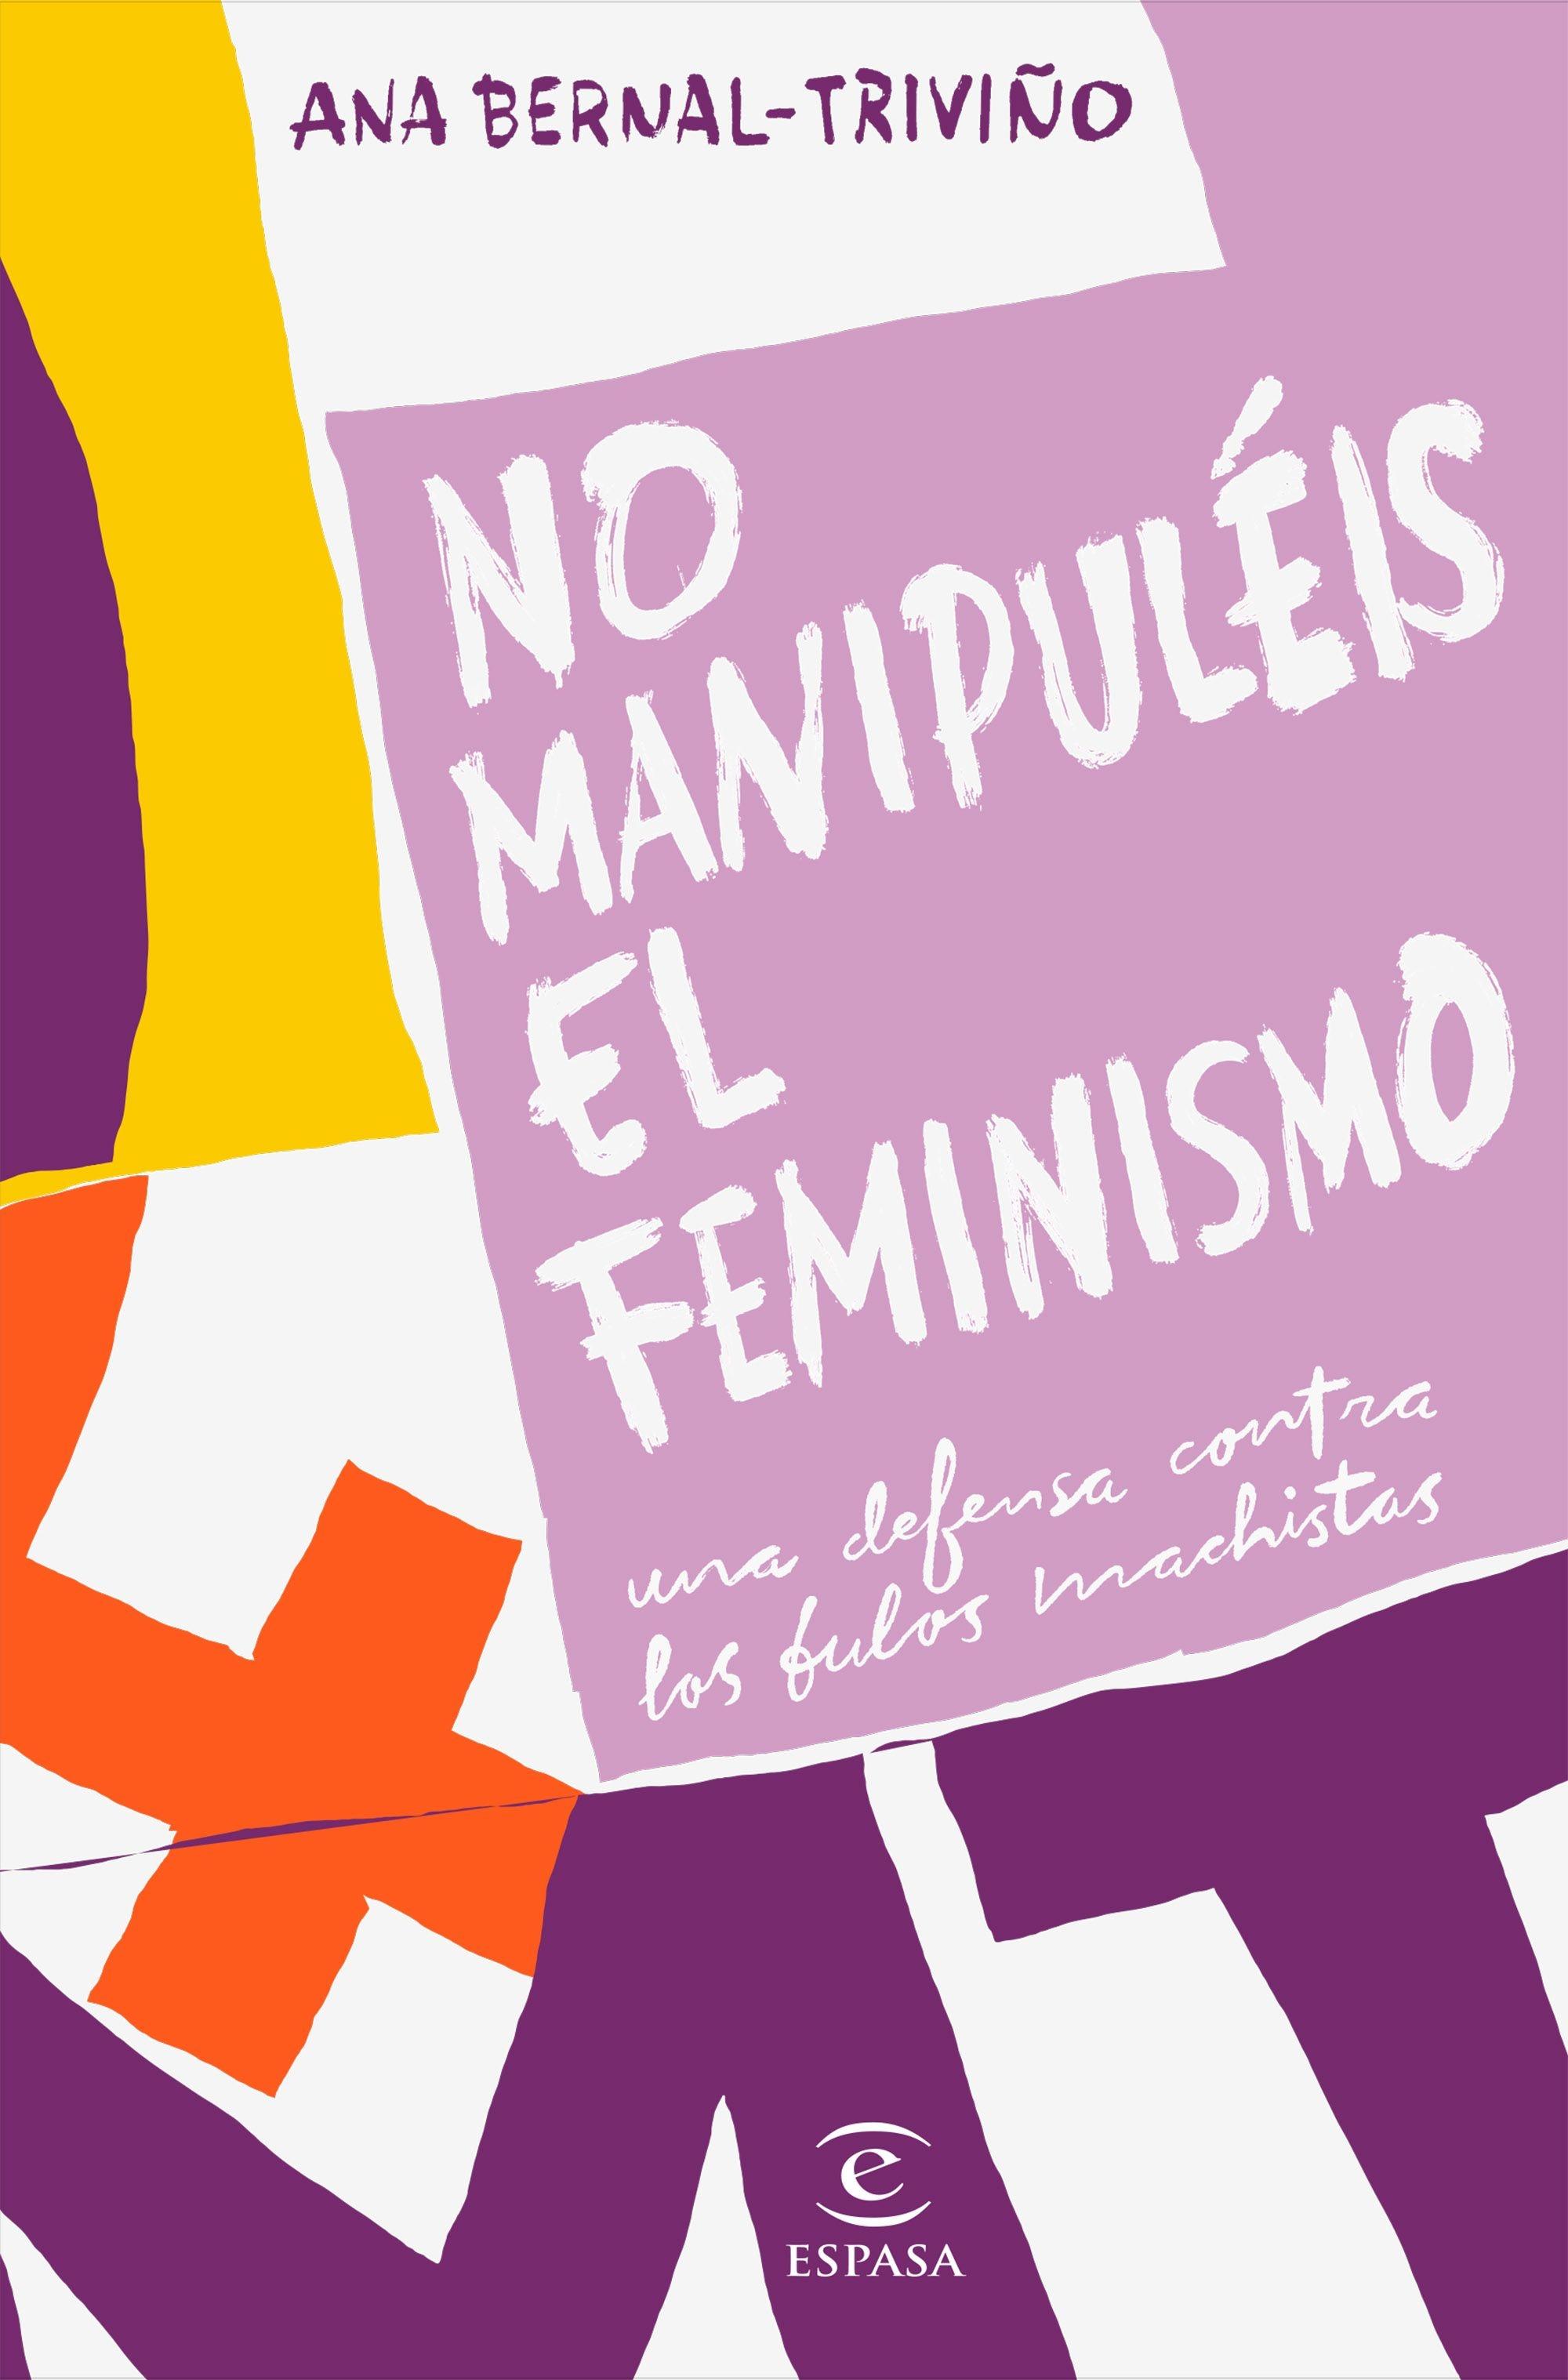 No Manipuléis el Feminismo "Una Defensa contra los Bulos Machistas"